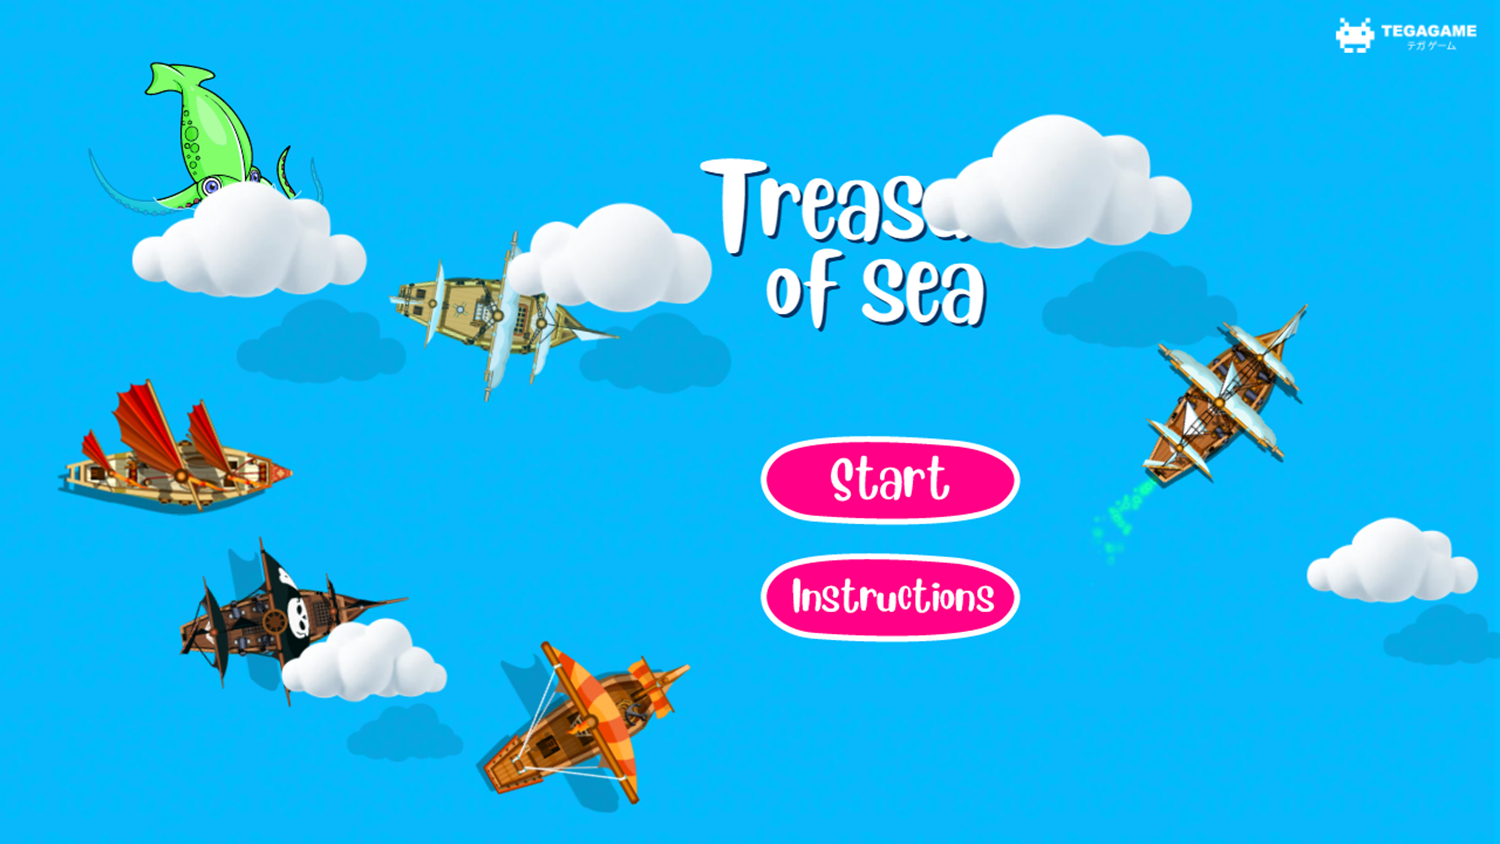 Treasure of Sea Game Welcome Screen Screenshot.